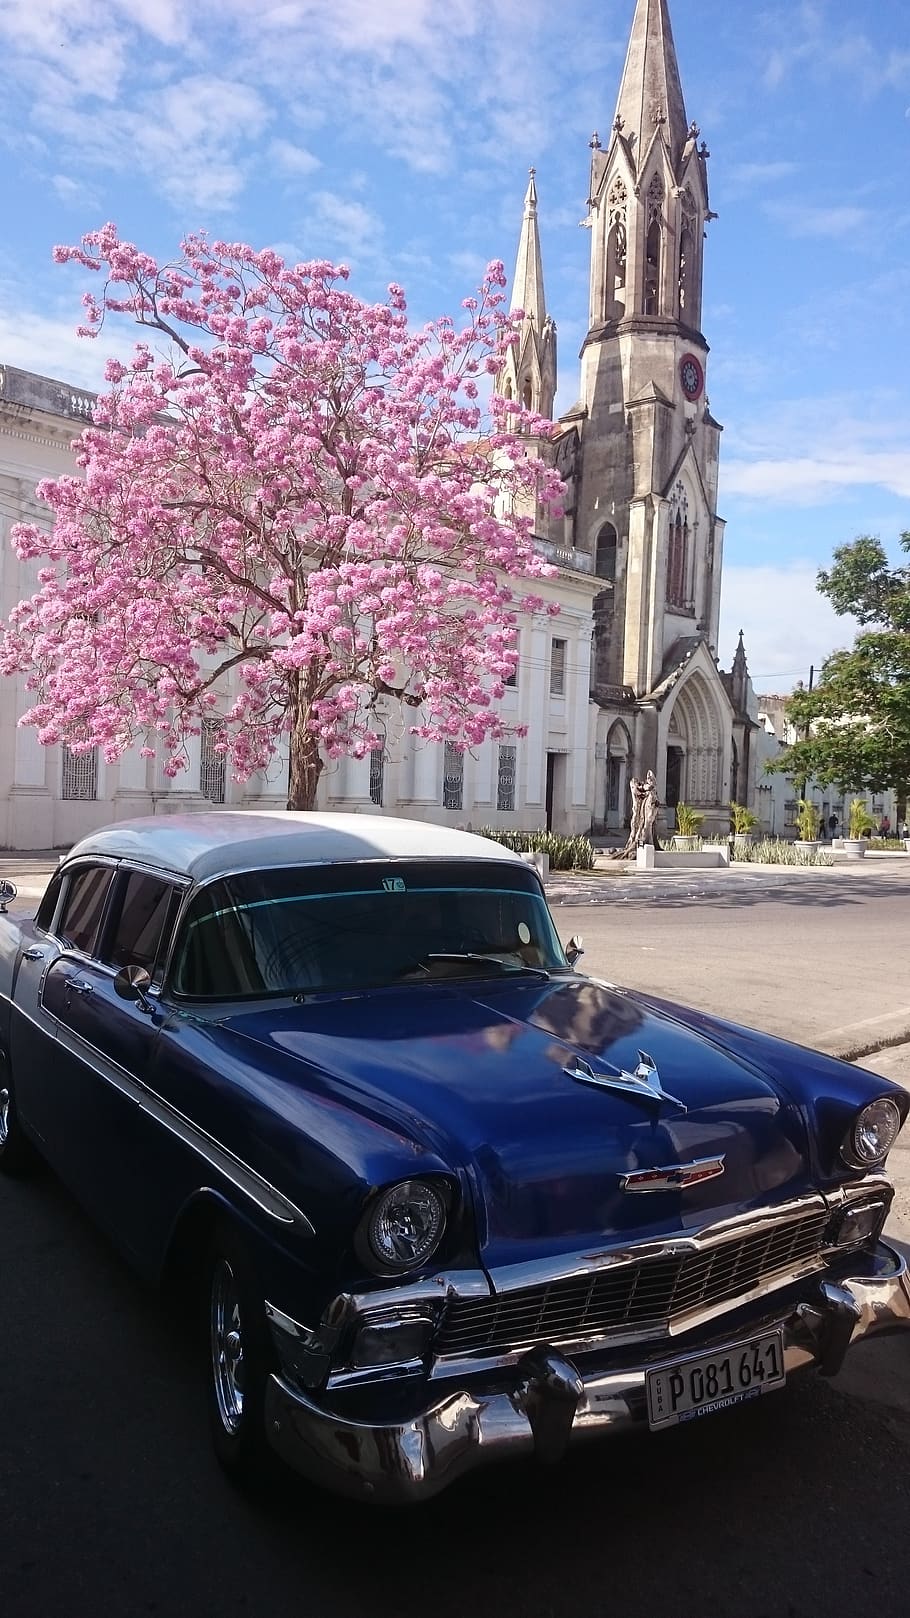 Cuba, coche clásico, clásico, oldtimer, v8, la habana, vintage, modo de transporte, transporte, planta